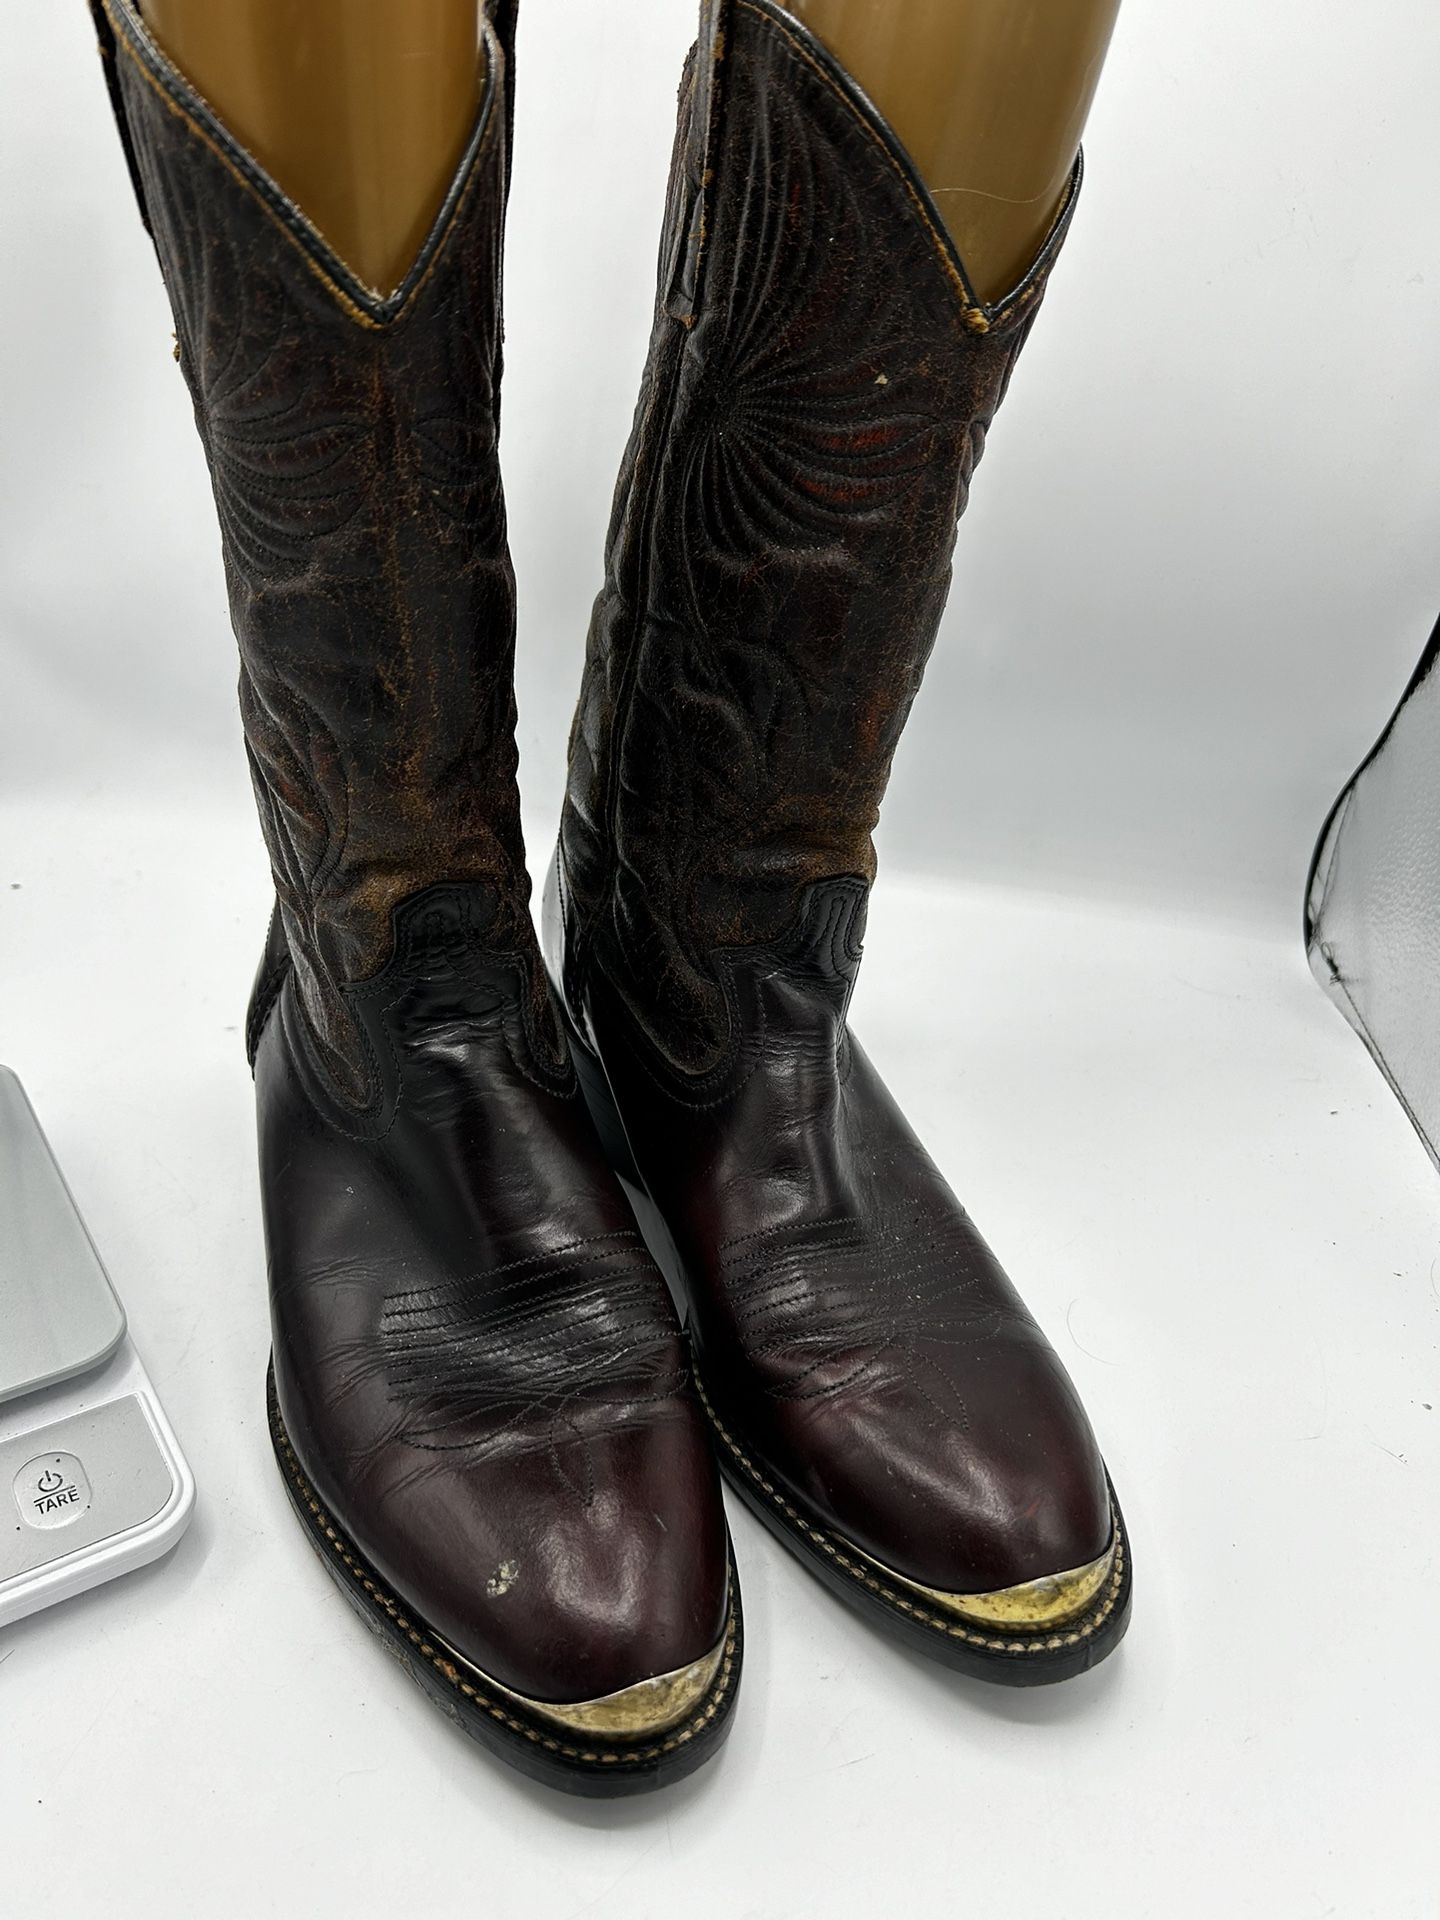 Vintage Black Dingo Men Boots Size 10 1/2 D Maroon Leather Western Cowboy